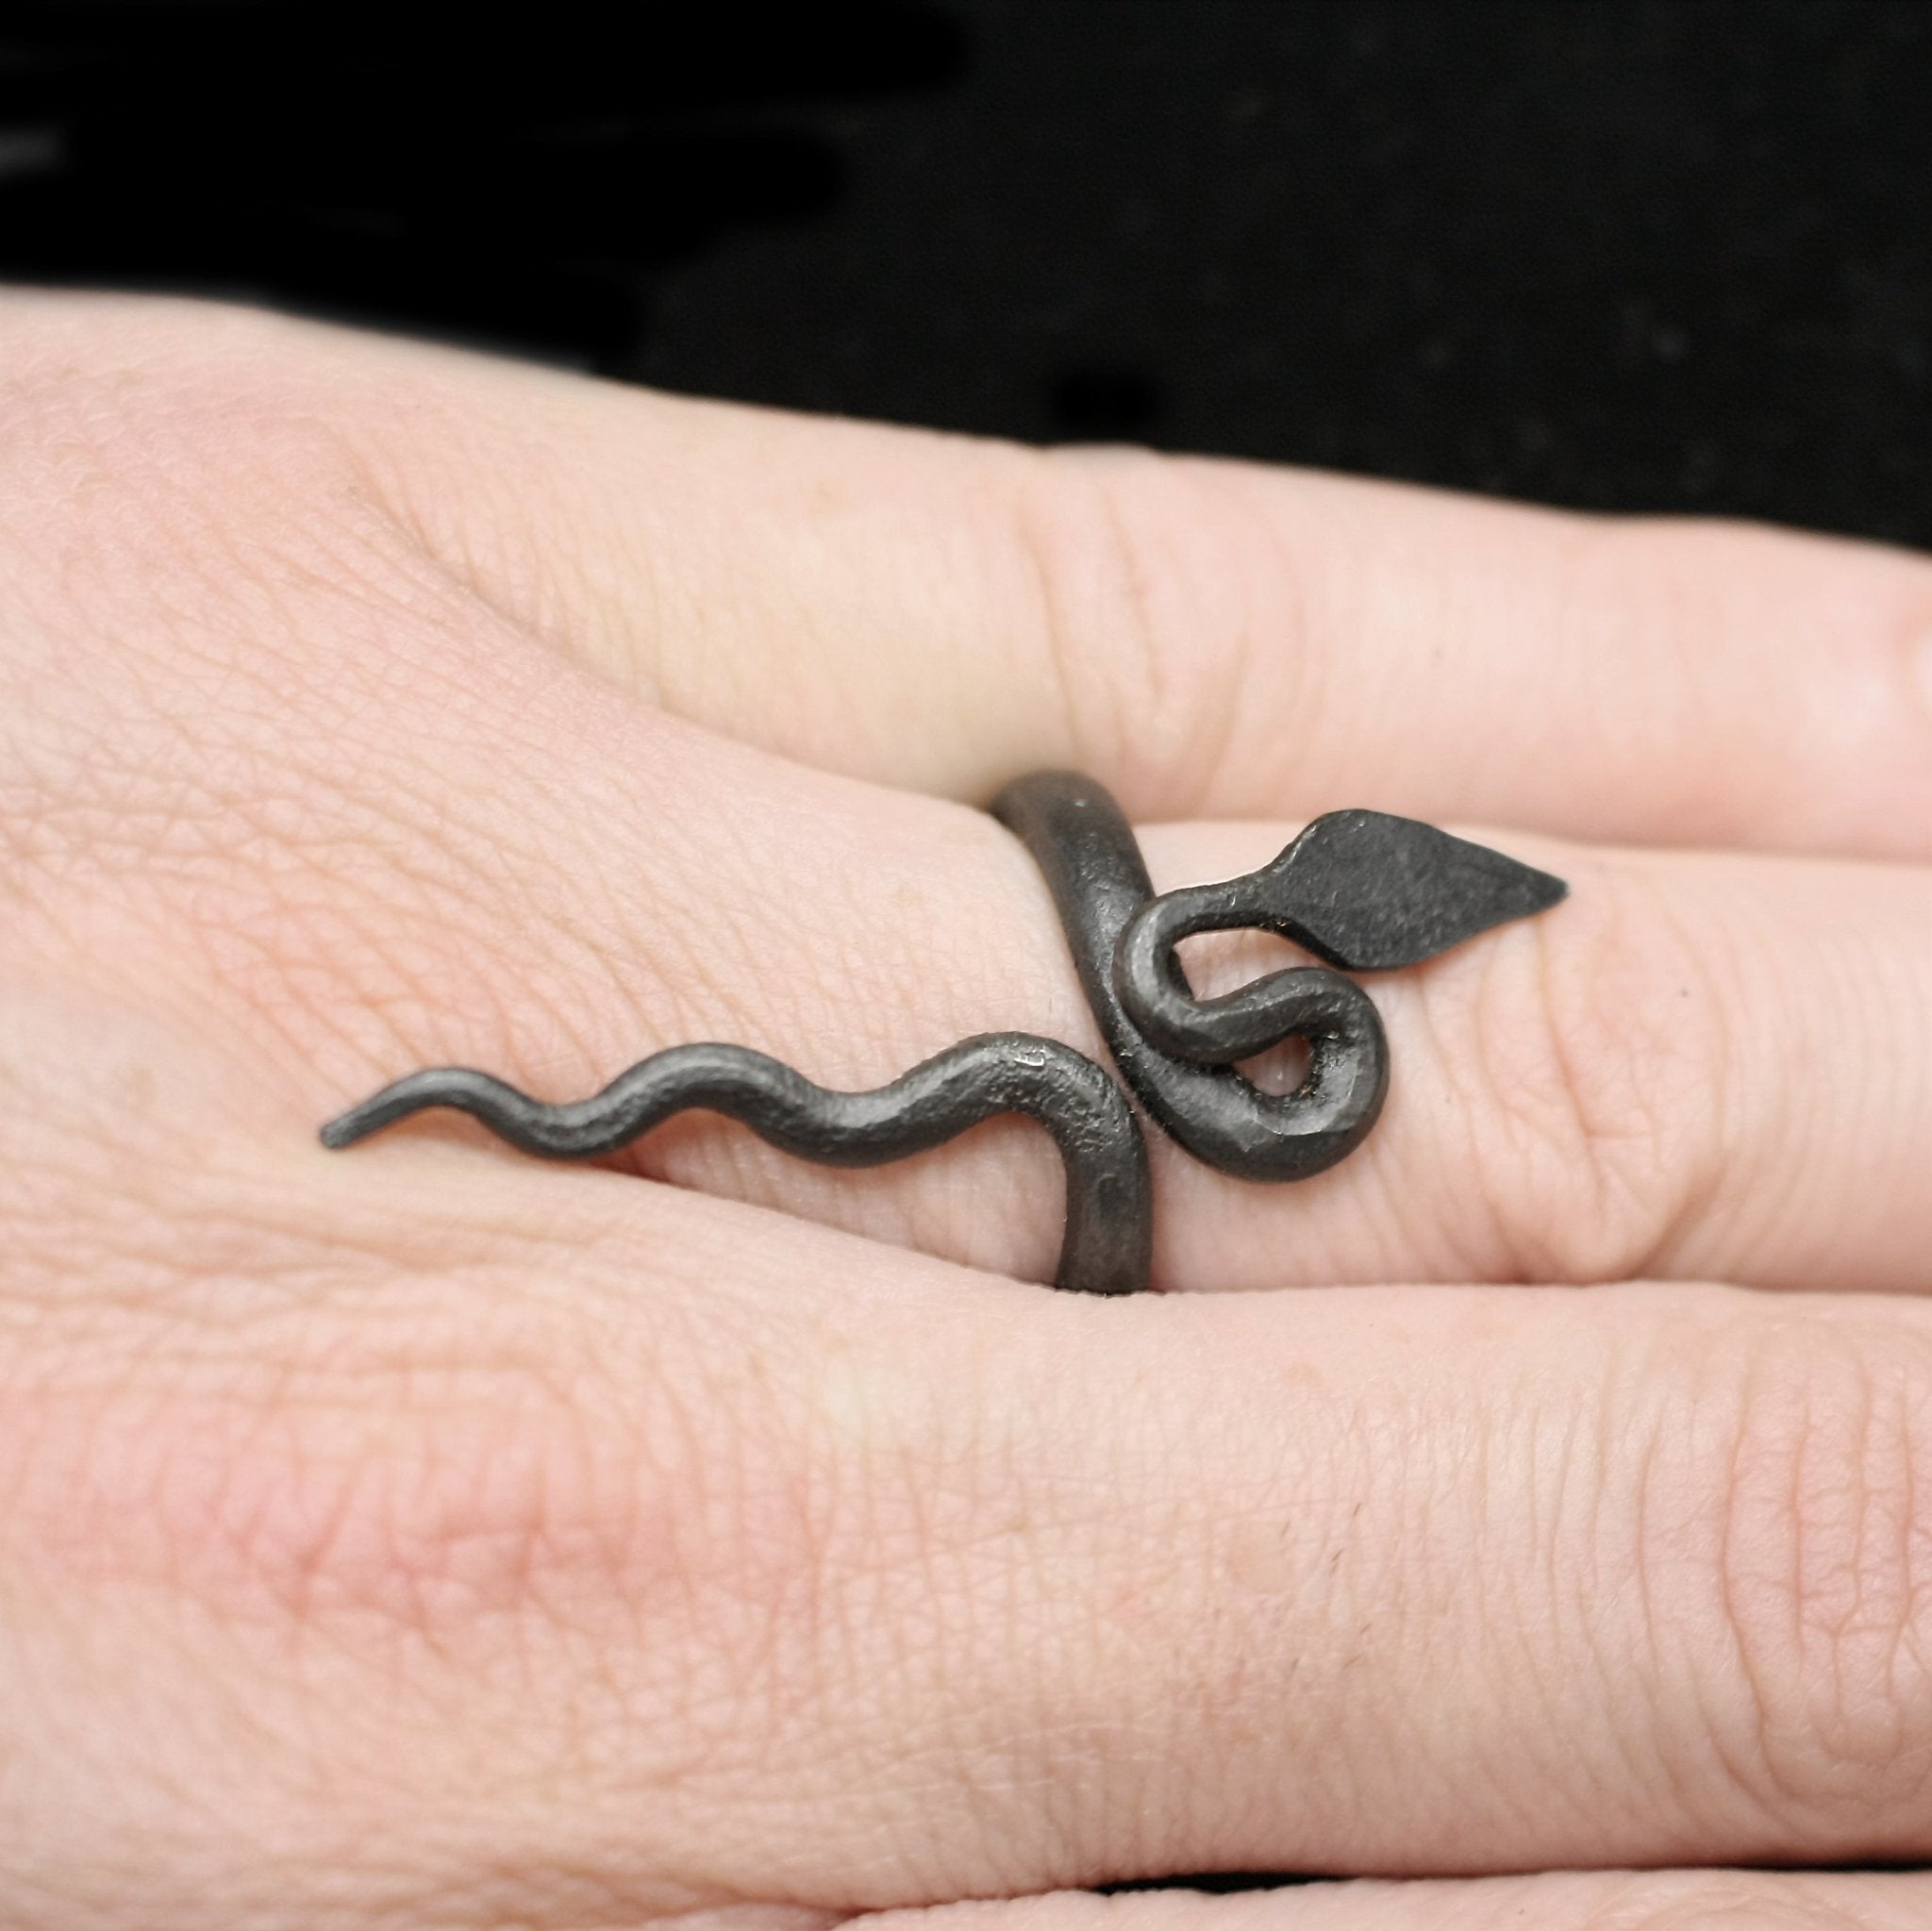 Iron Snake / Serpent Ring on Finger